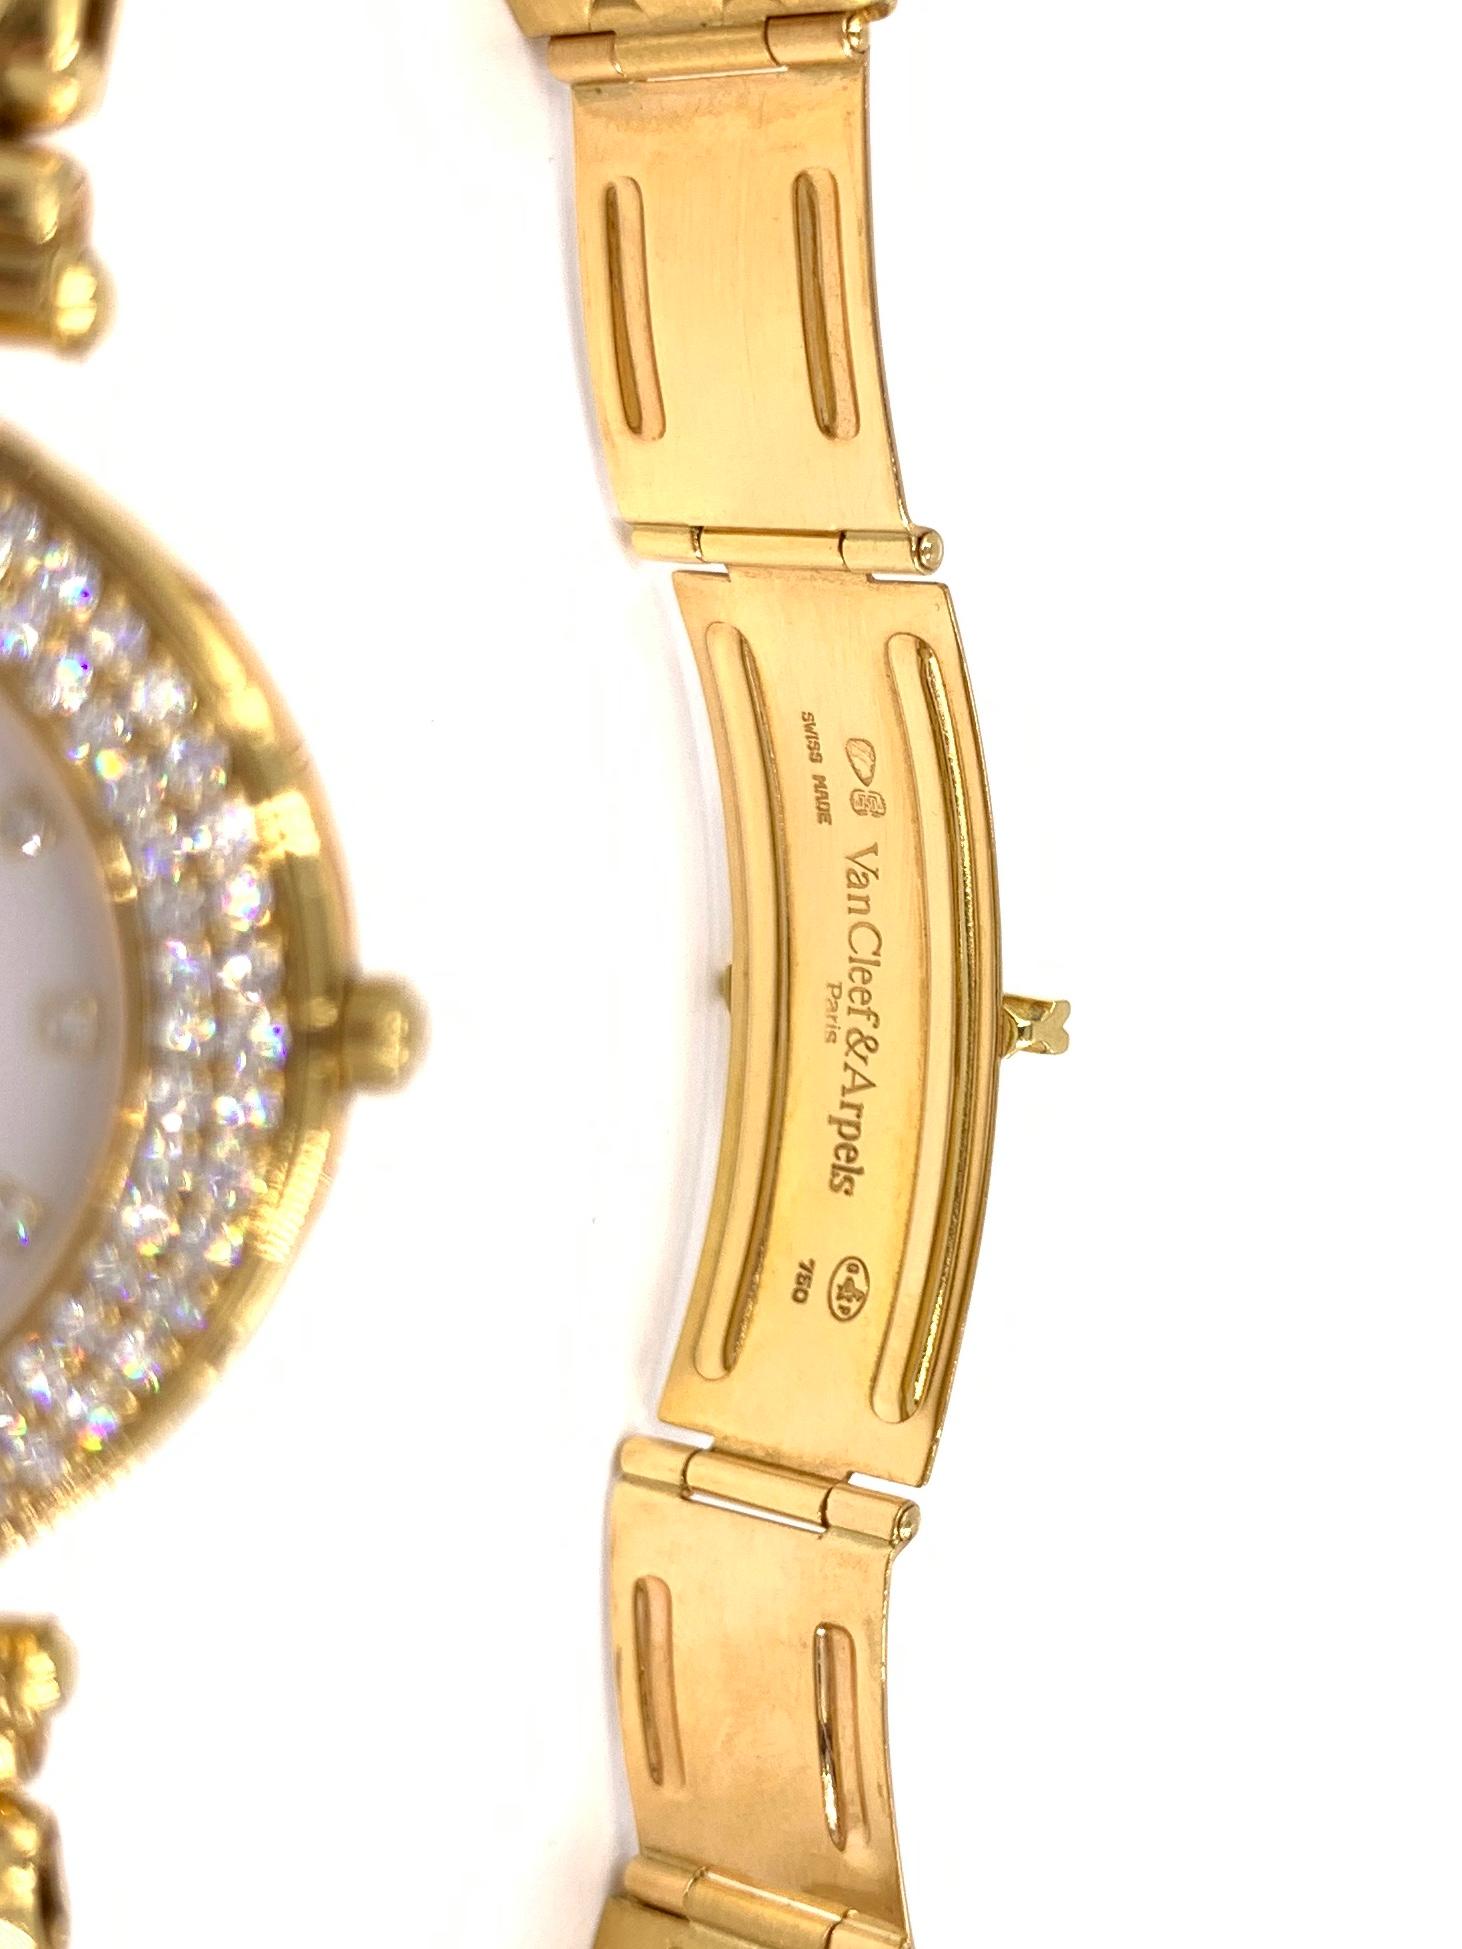 18 Karat Yellow Gold Van Cleef & Arpels Classique Watch with Diamonds 1